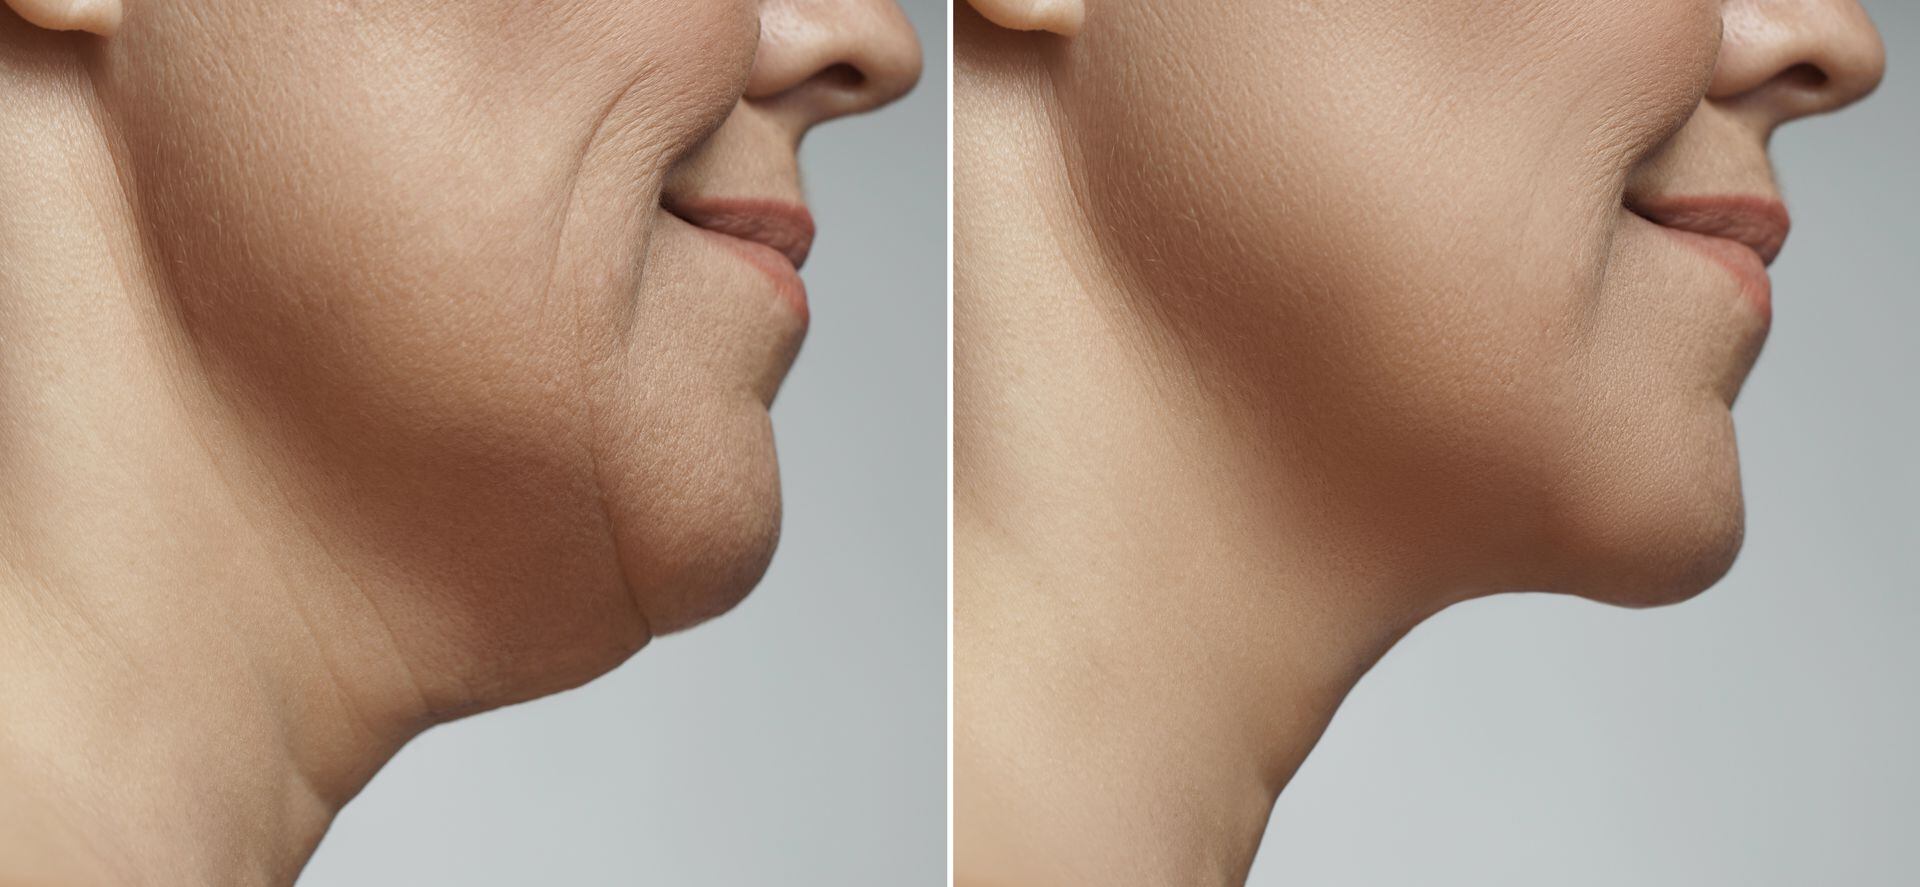 Cómo definir la mandíbula y rostro eliminando grasa facial - DOC